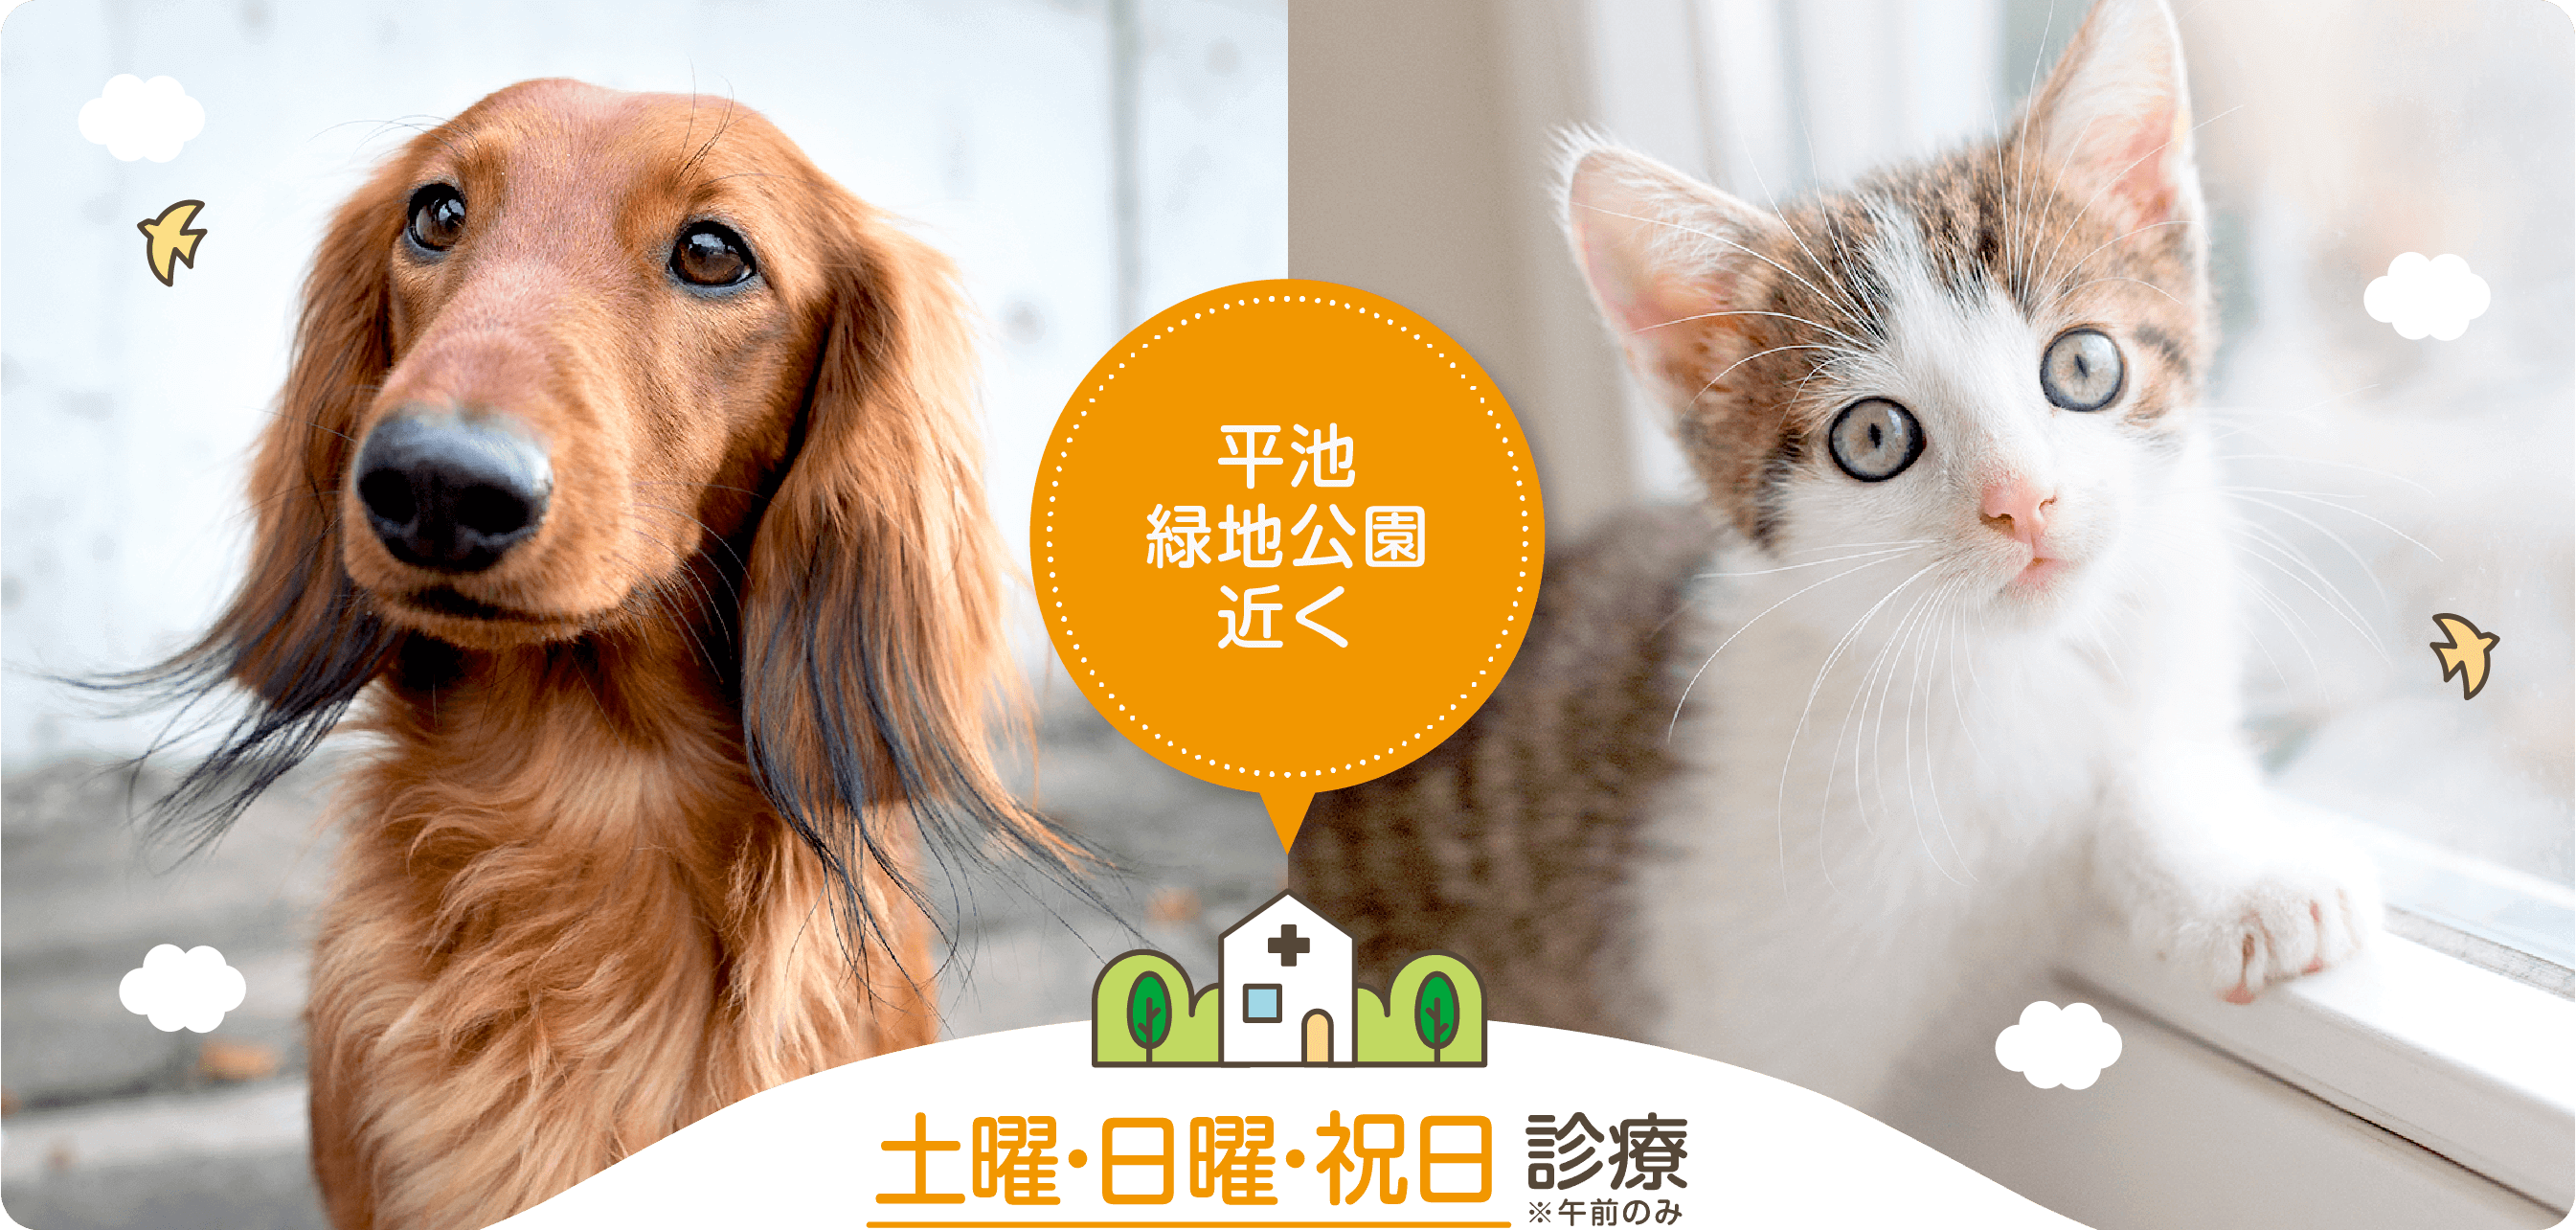 和歌山・紀の川の動物病院、平池緑地公園近くの『ひらいけ動物病院』では、犬、猫の診療を土曜・日曜・祝日(※午前のみ)も行っております。